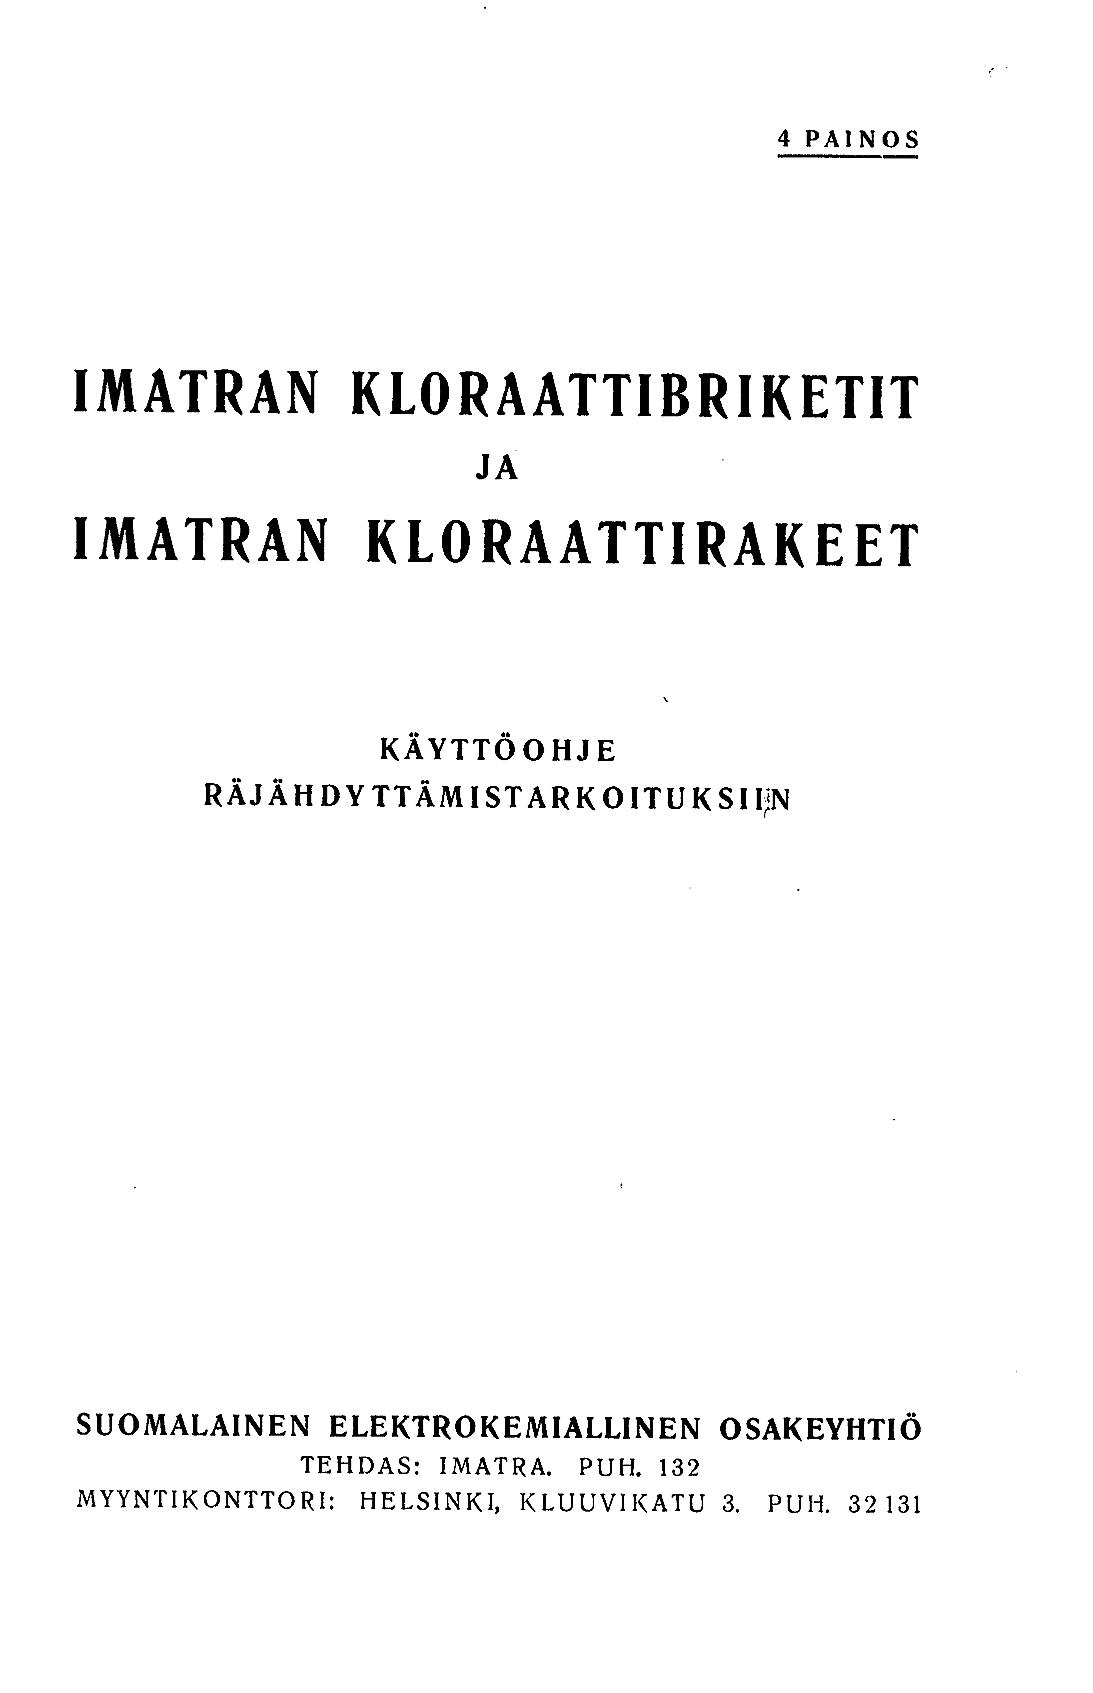 Imatran kloraattibriketit ja Imatran kloraattirakeet, Imatra  -  Digitaaliset aineistot - Kansalliskirjasto